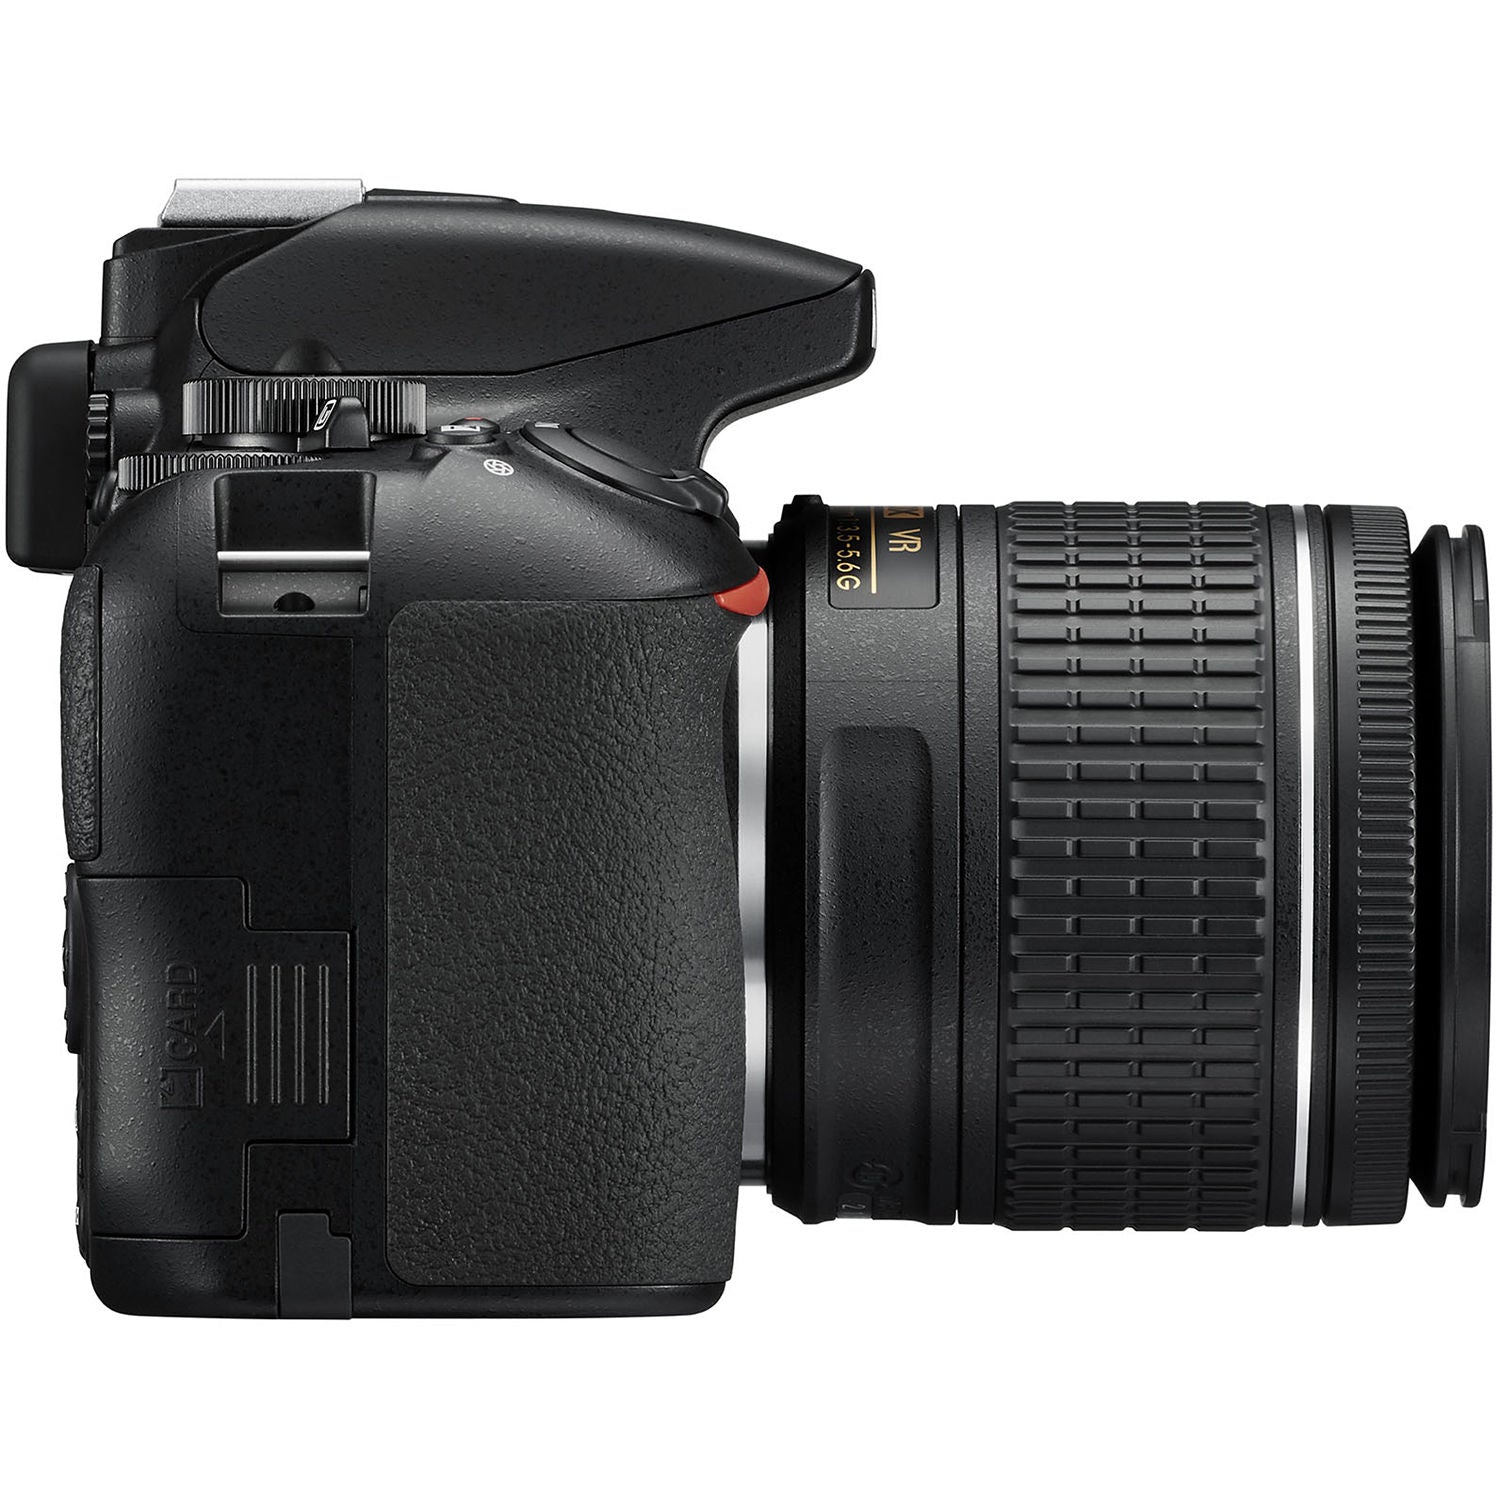 Nikon D3500 DSLR Camera with AF-P 18-55mm VR Lens Bundle � SanDisk 32GB SD Card + 9PC Filter + MORE - International